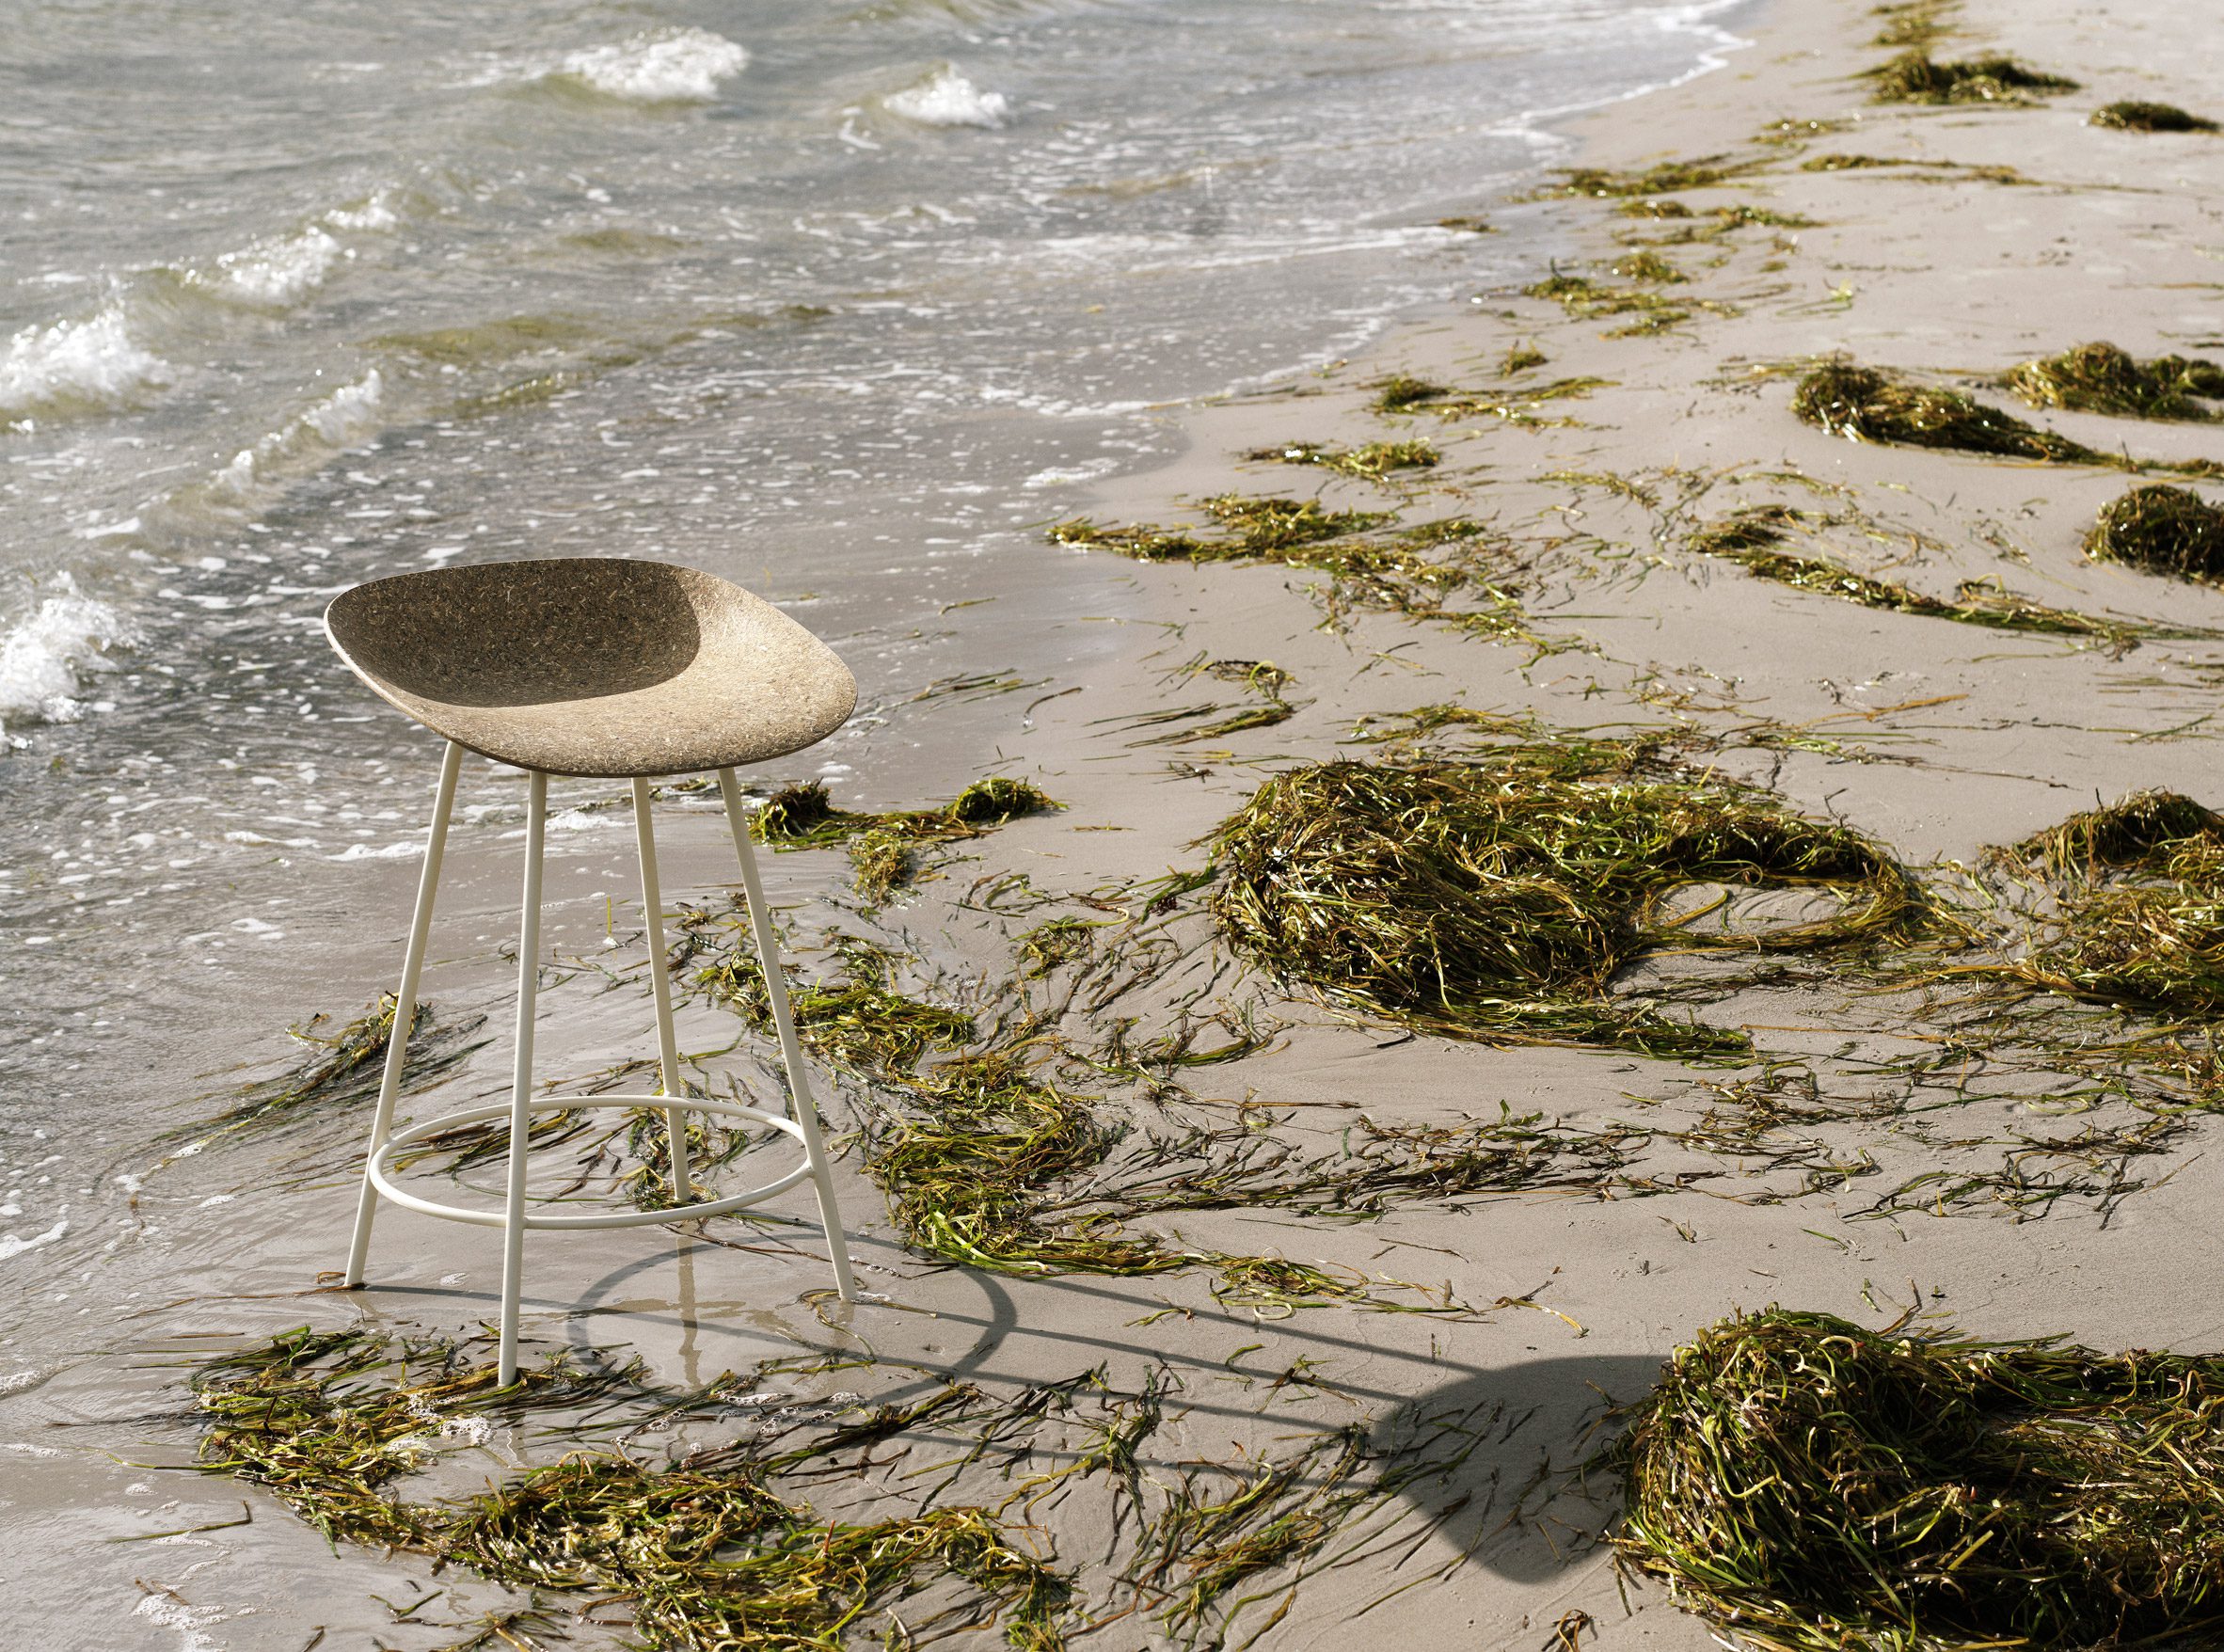 Mat eelgrass chair by Foersom & Hiort-Lorenzen and Norman Copenhagen on a beach